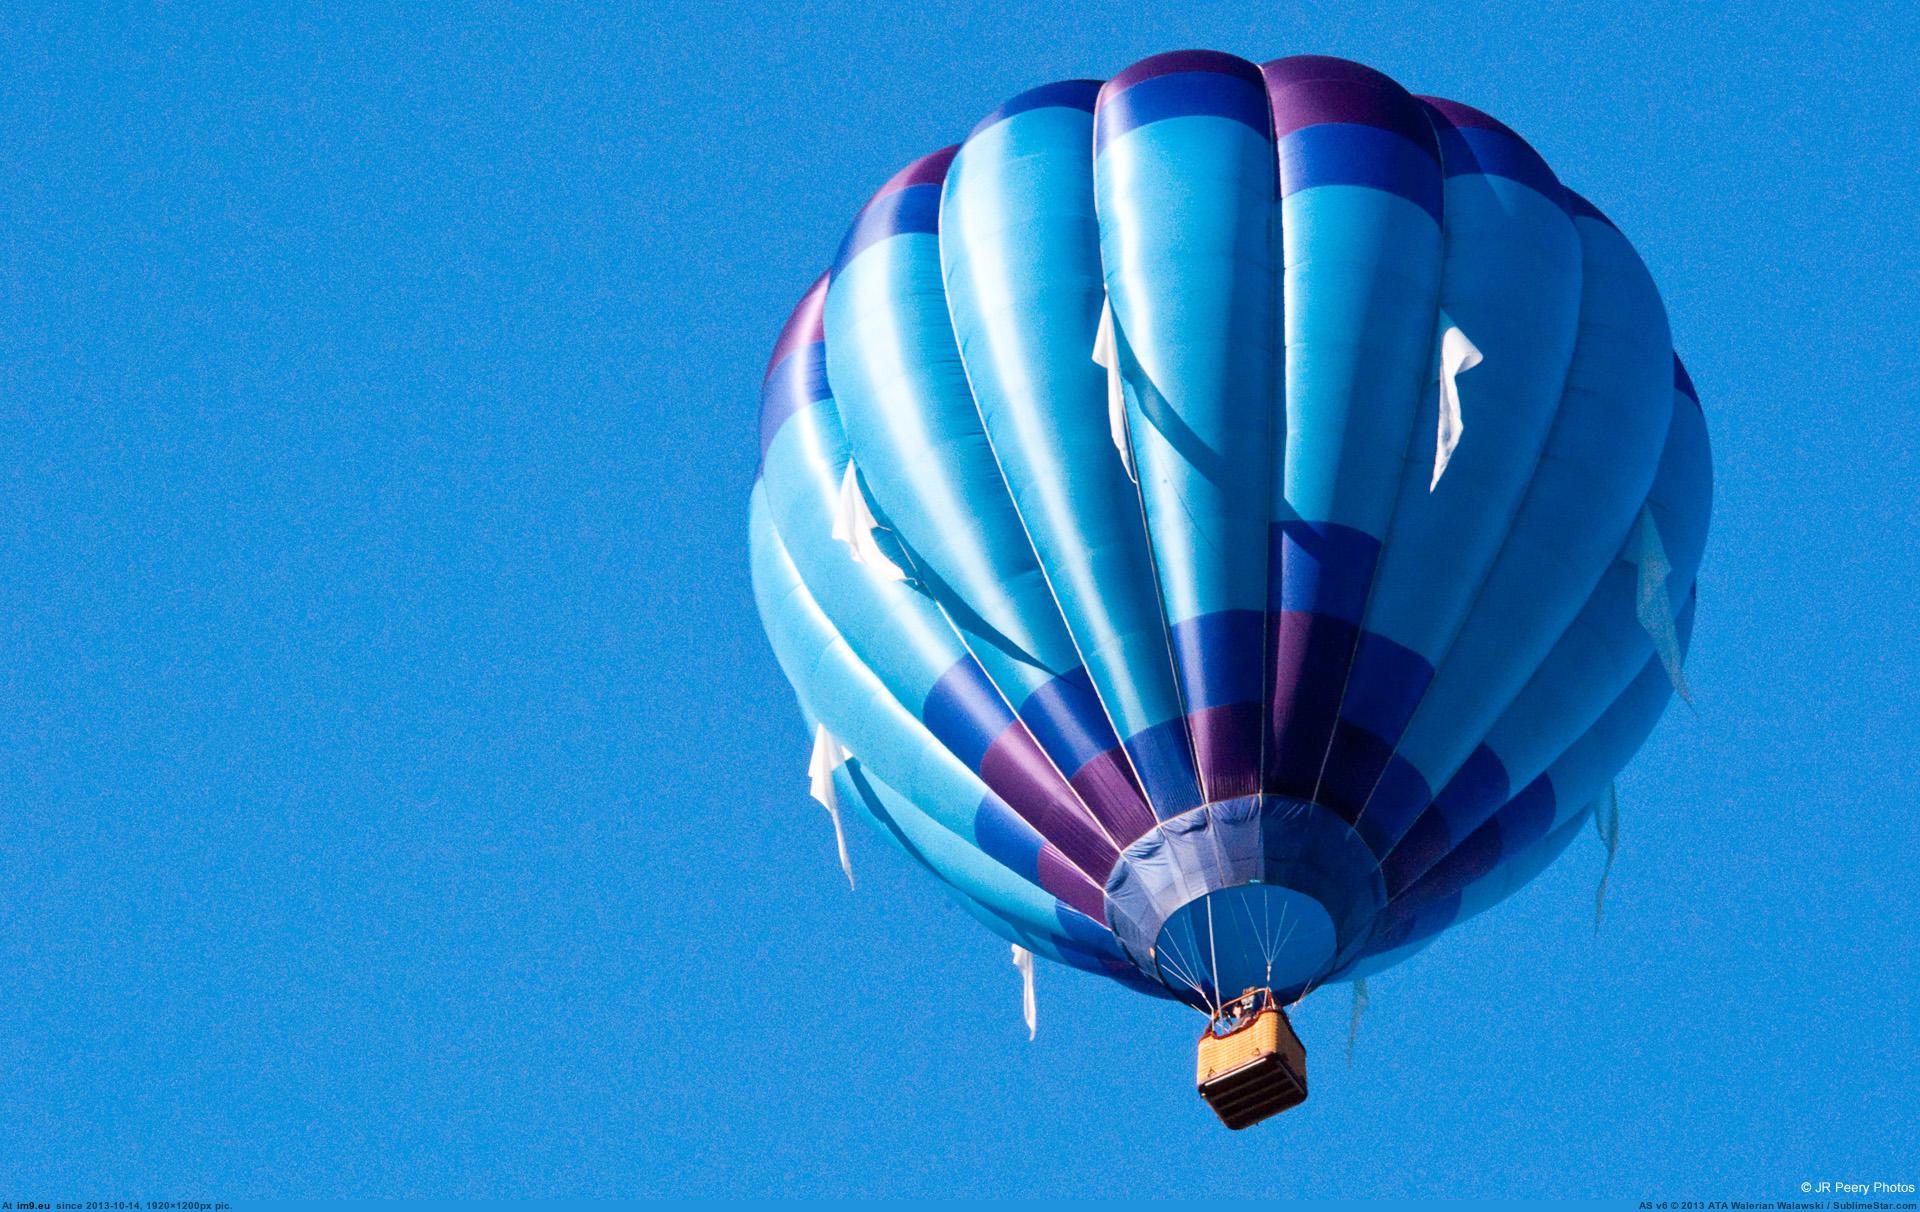 Включи воздушную 3. Воздушный шар. Воздушный шар с корзиной. Голубой воздушный шар. Воздушный шар в голубом небе.